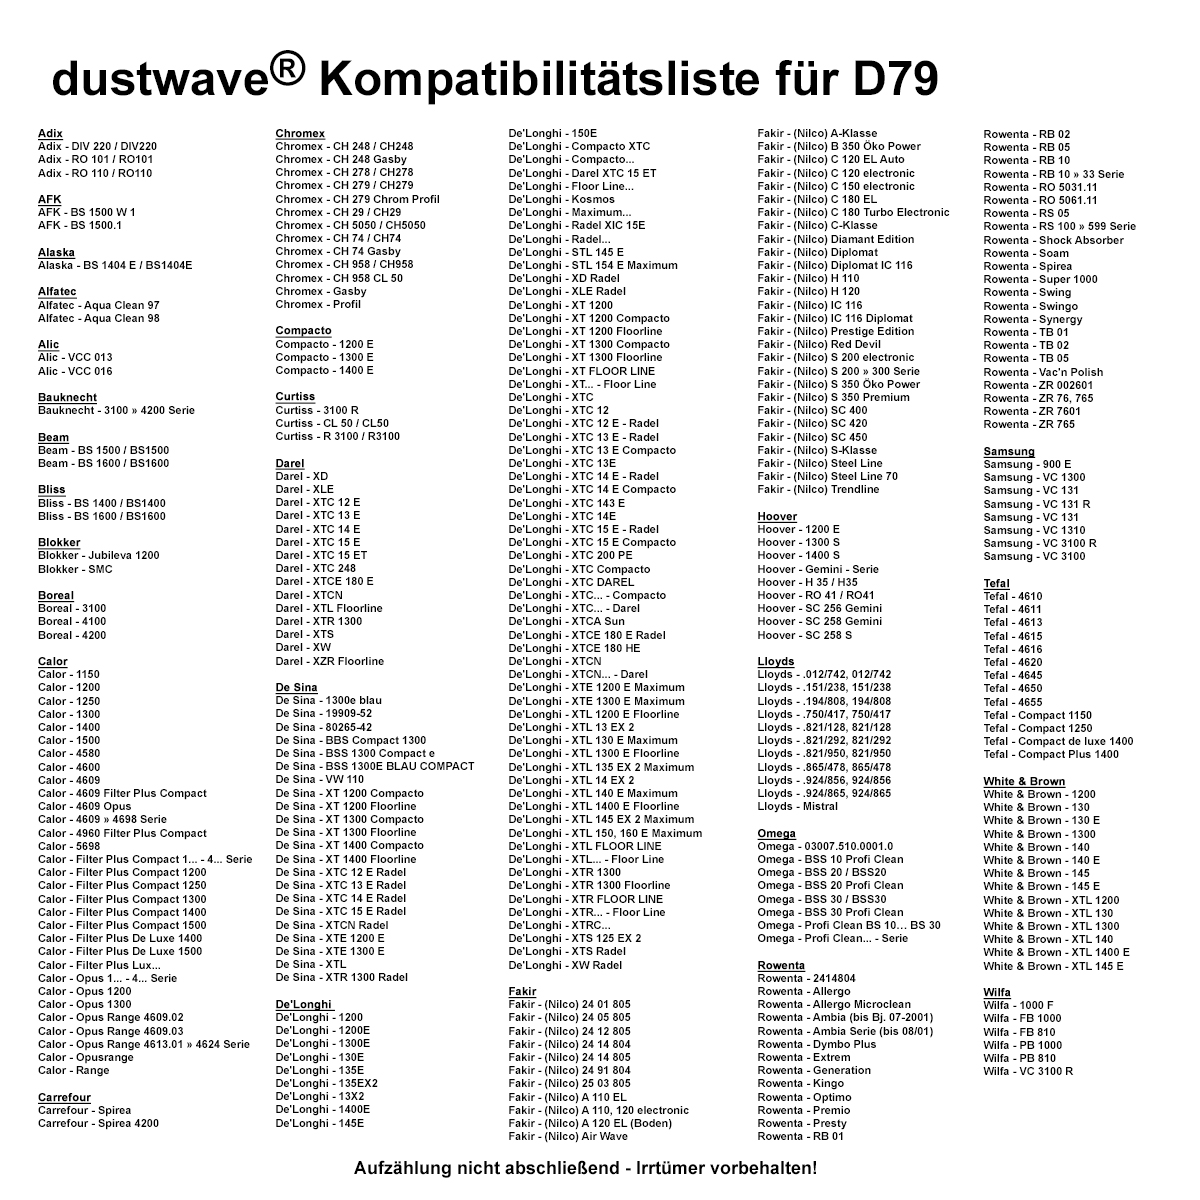 Dustwave® 10 Staubsaugerbeutel für Hoover RO 41 - hocheffizient, mehrlagiges Mikrovlies mit Hygieneverschluss - Made in Germany